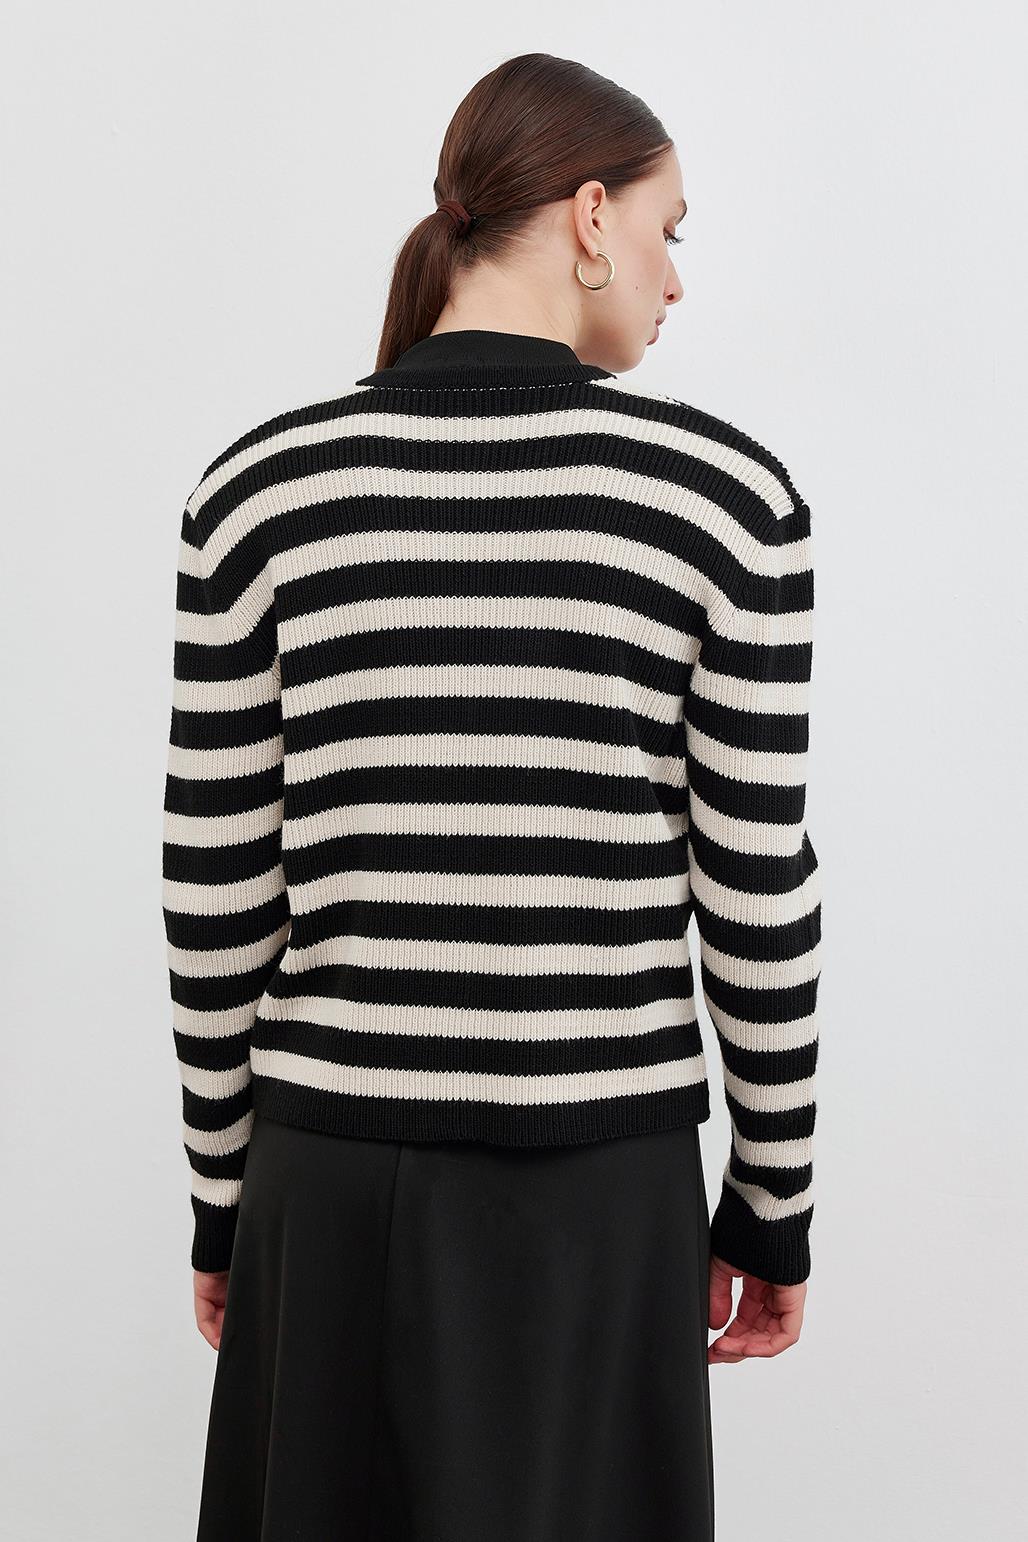 Striped Knit Cardigan Black